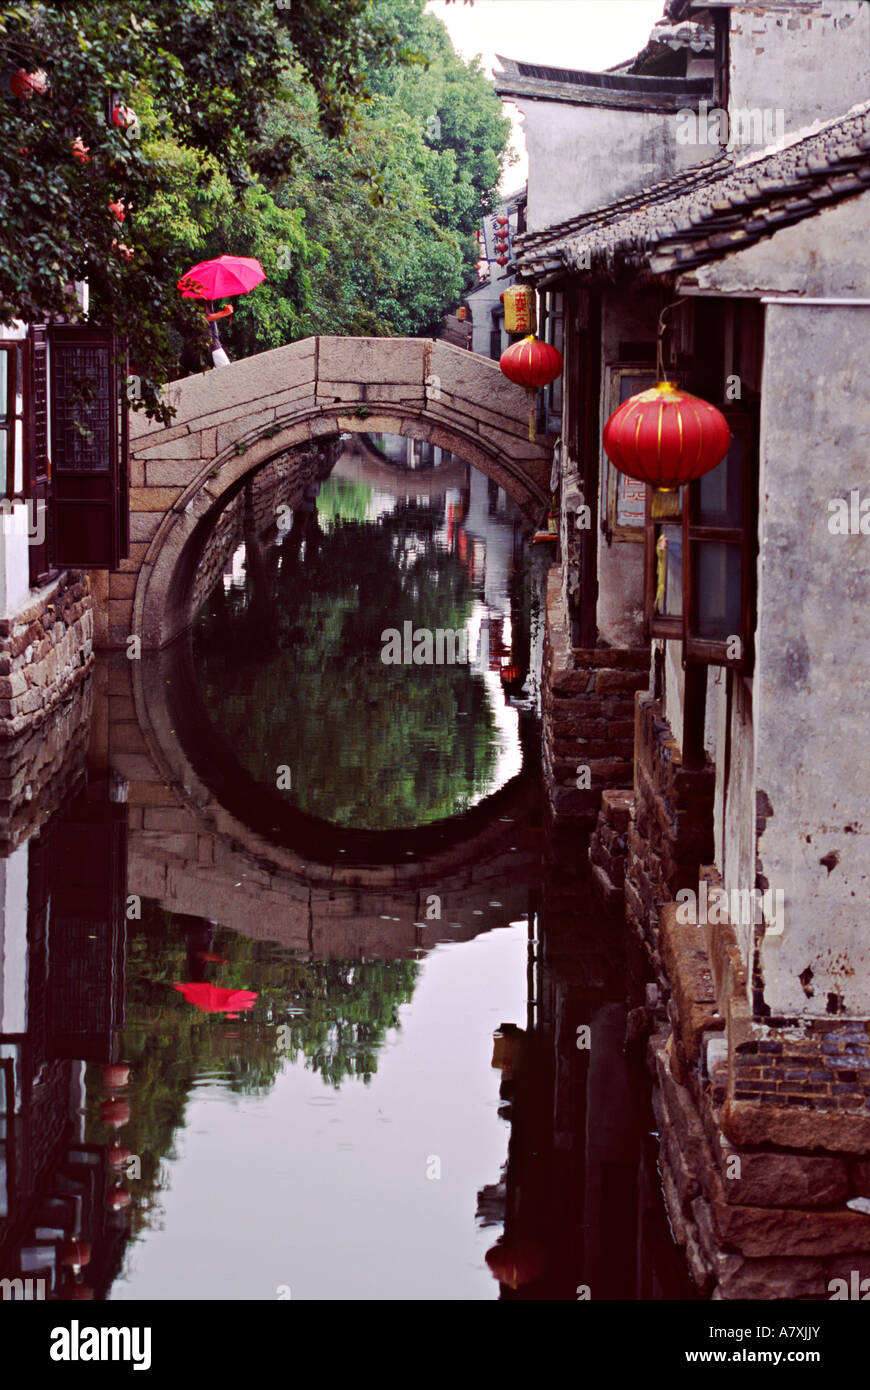 L'Asie, Chine, Shanghai, China. Parapluie rouge sur le pont de pierre en arc au-dessus du canal de la vieille ville Banque D'Images